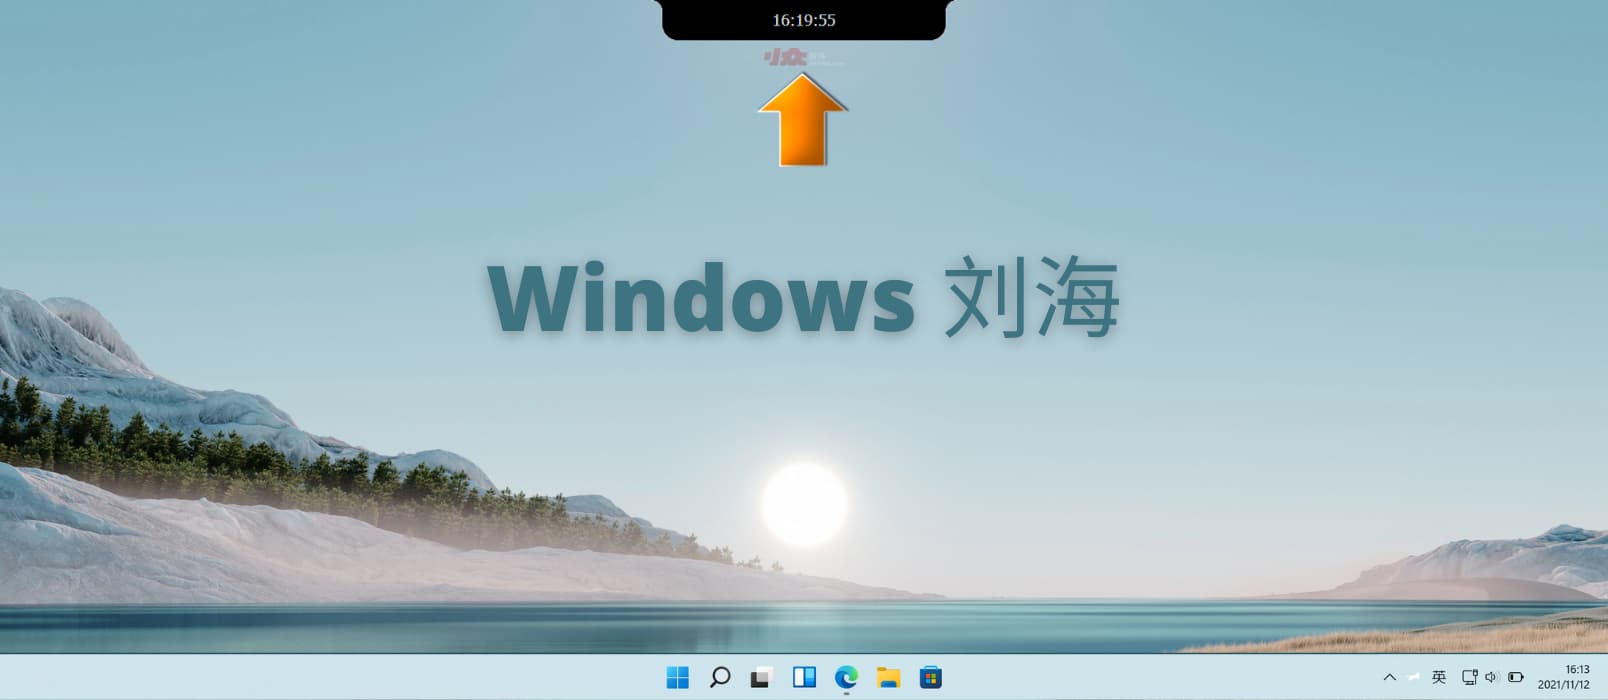 Windows 的刘海 - 为 Windows  屏幕顶部添加刘海